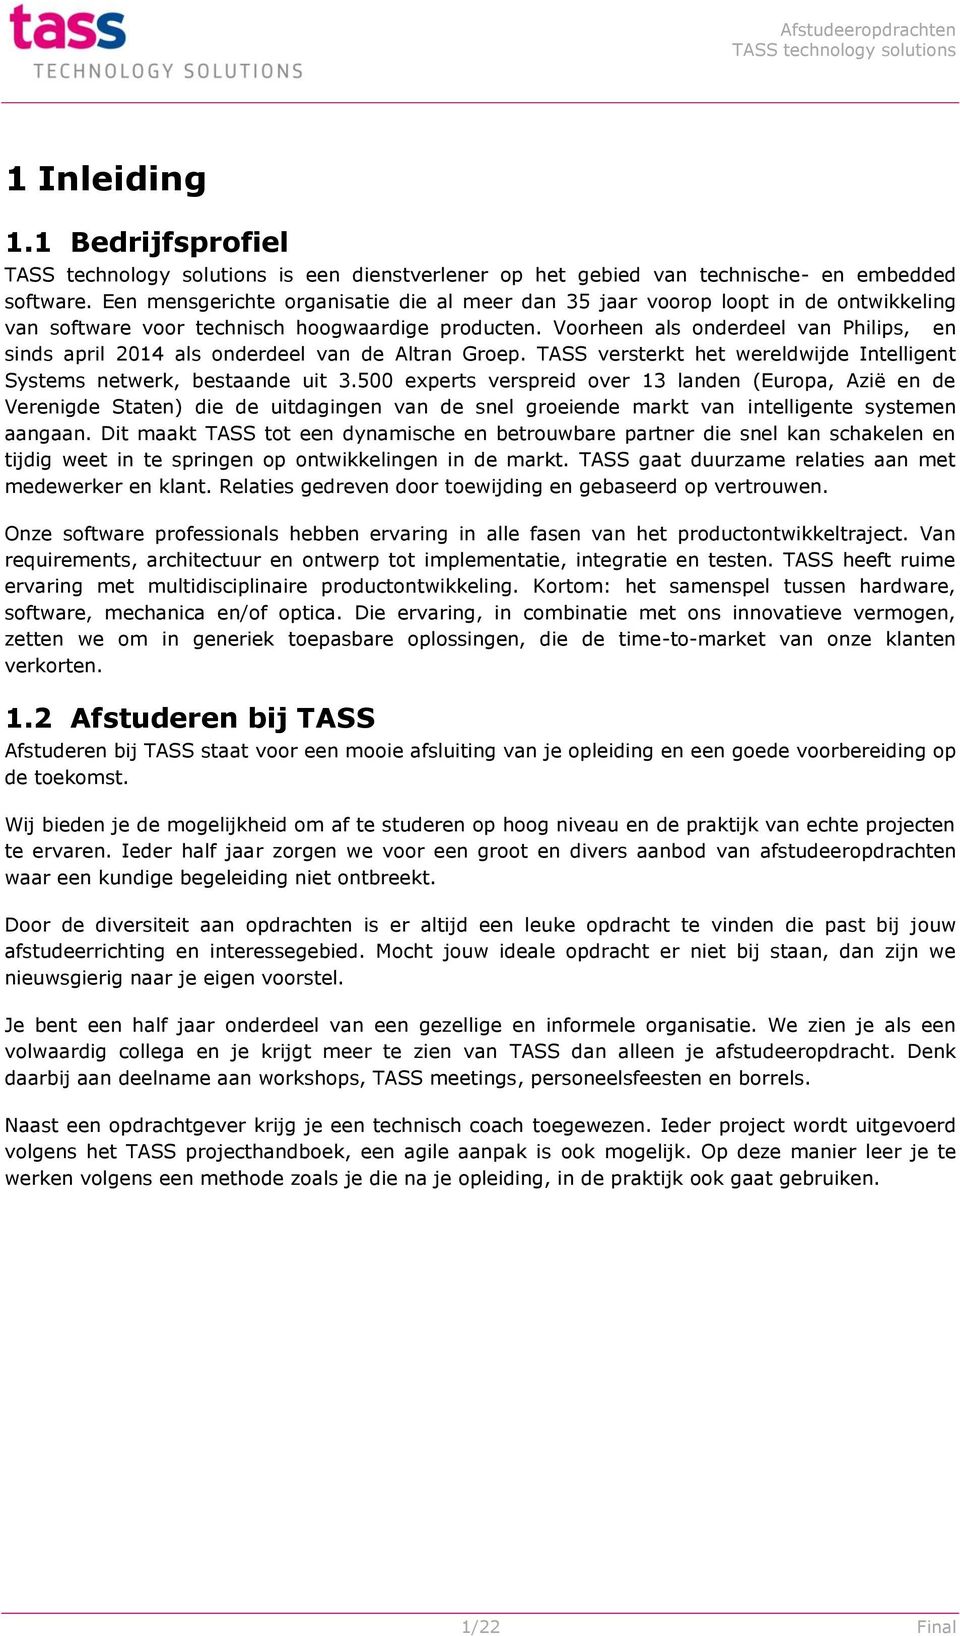 Voorheen als onderdeel van Philips, en sinds april 2014 als onderdeel van de Altran Groep. TASS versterkt het wereldwijde Intelligent Systems netwerk, bestaande uit 3.